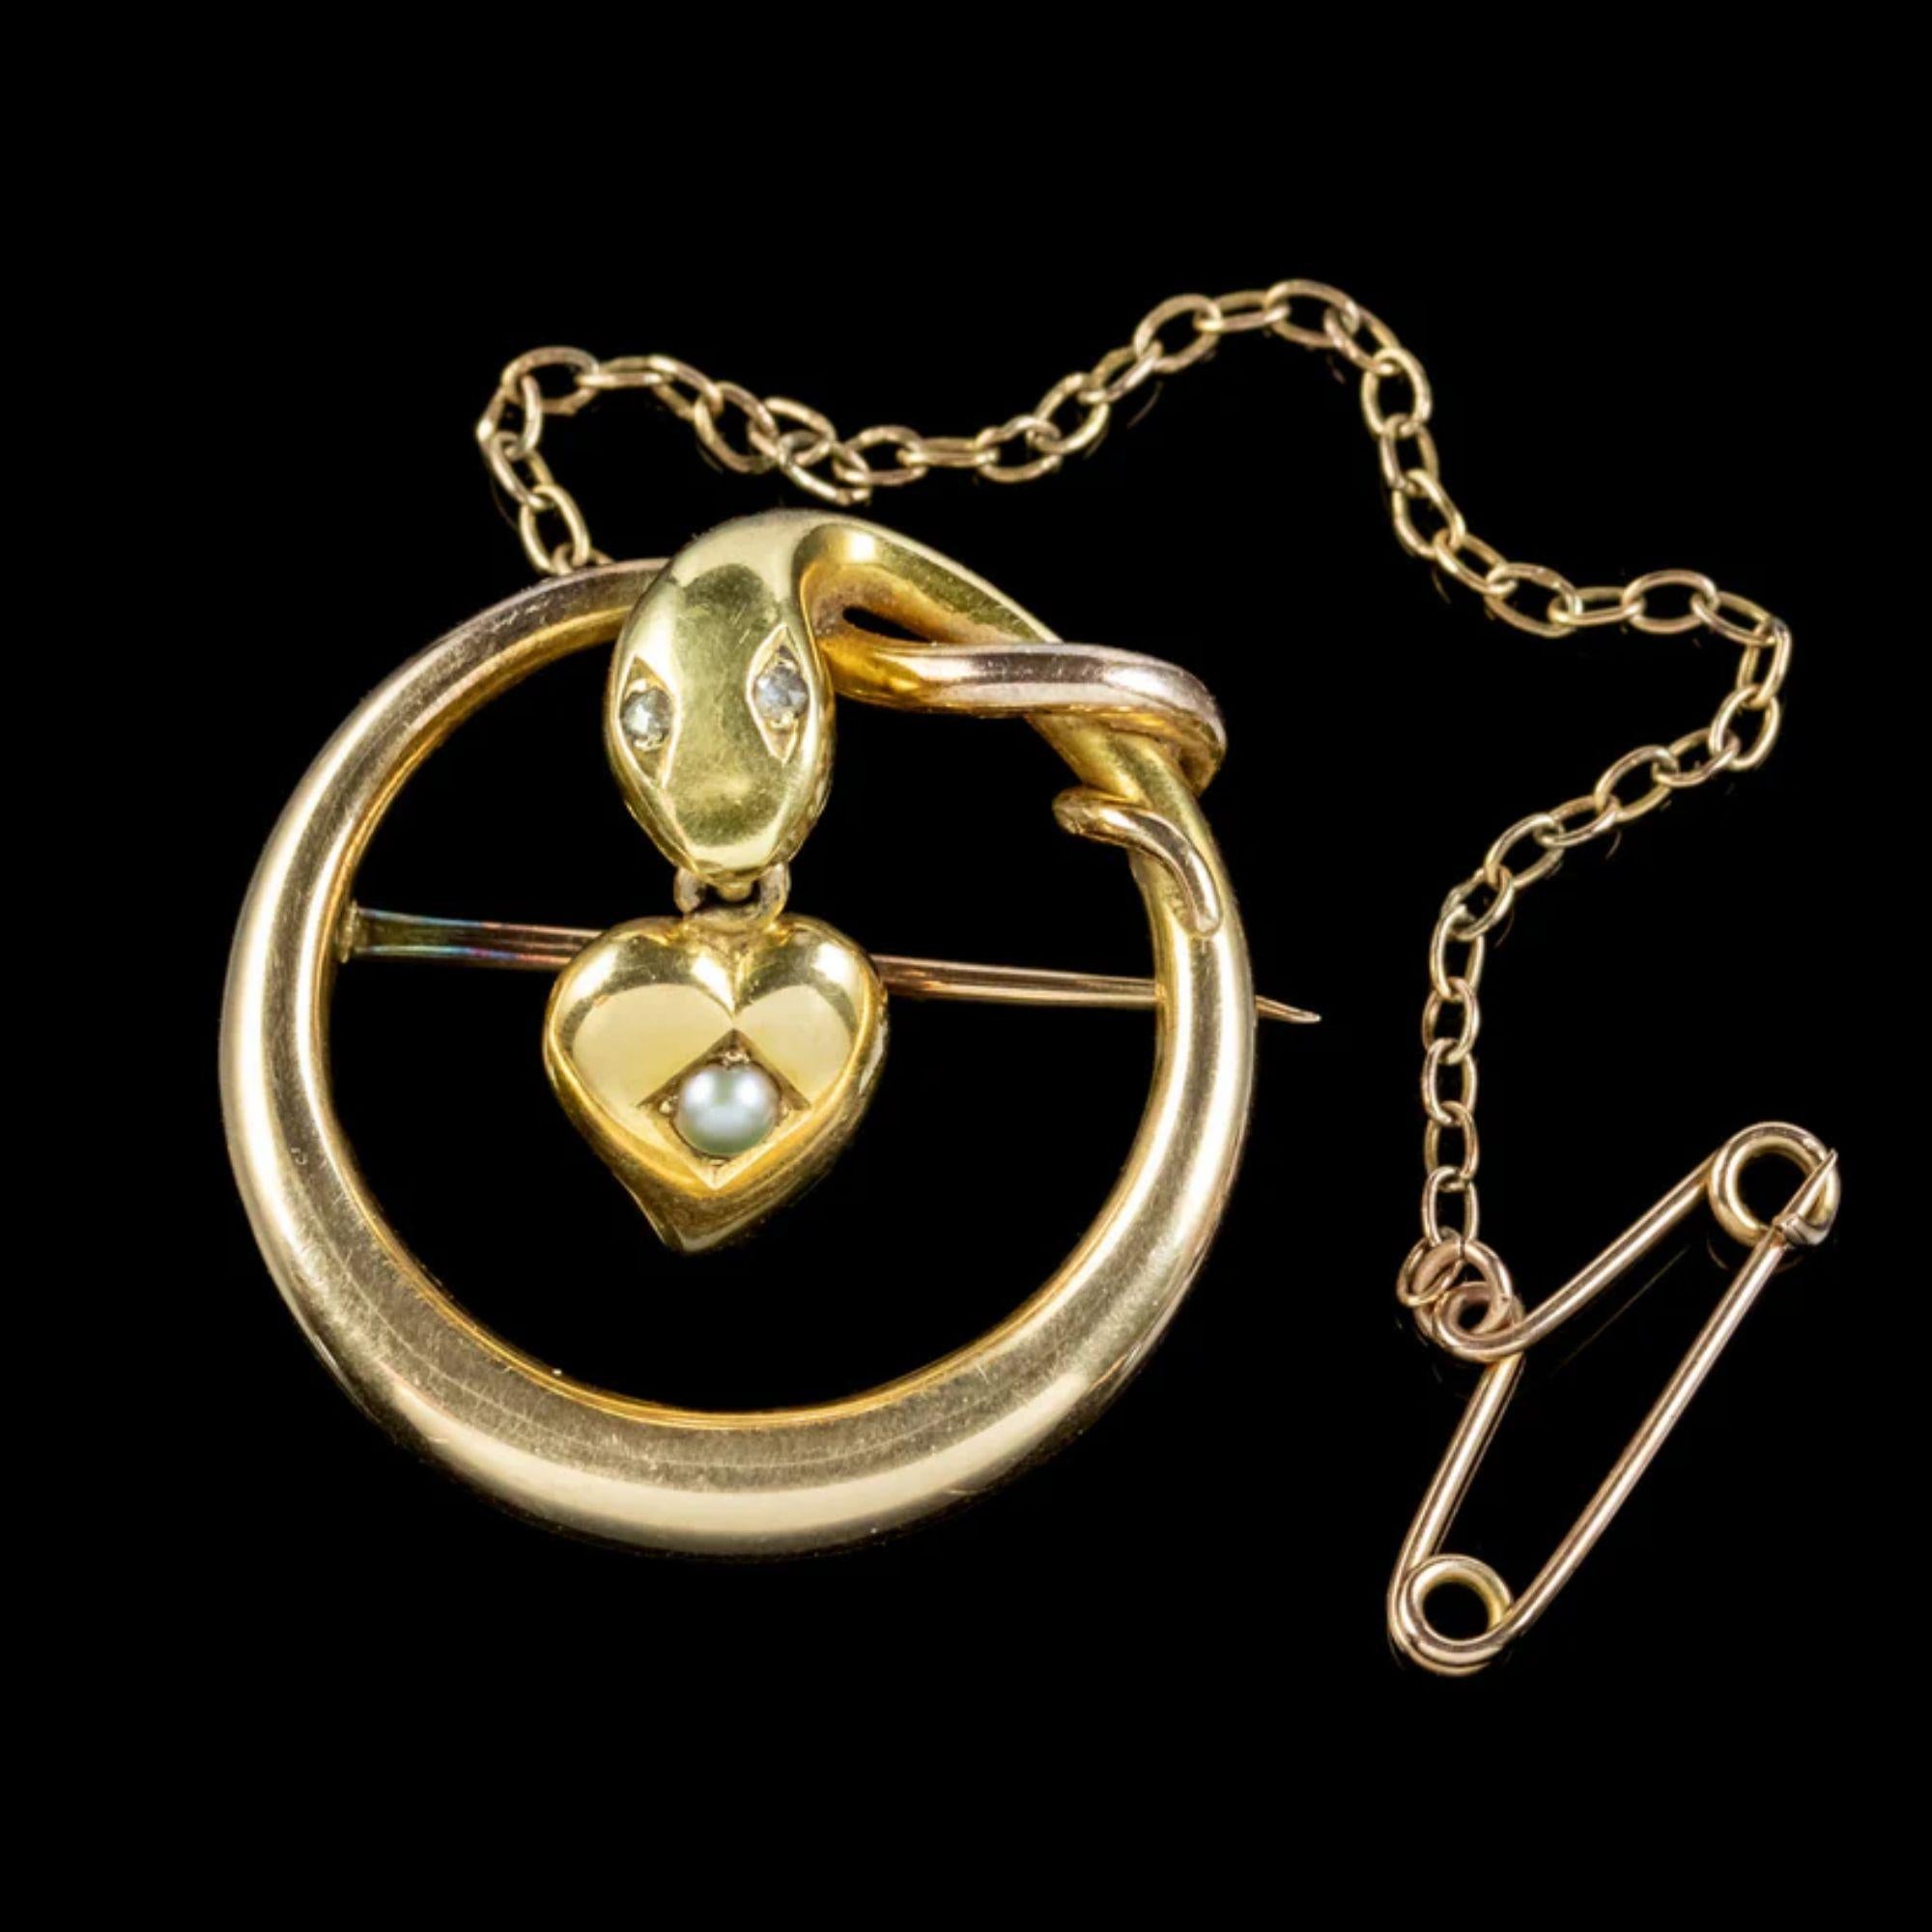 Une fabuleuse broche serpent victorienne ancienne représentant un serpent en or jaune 15ct avec des yeux scintillants en diamant taillé en rose et un cœur de sorcière suspendu à sa bouche avec une perle au centre.

Les bijoux en forme de serpent